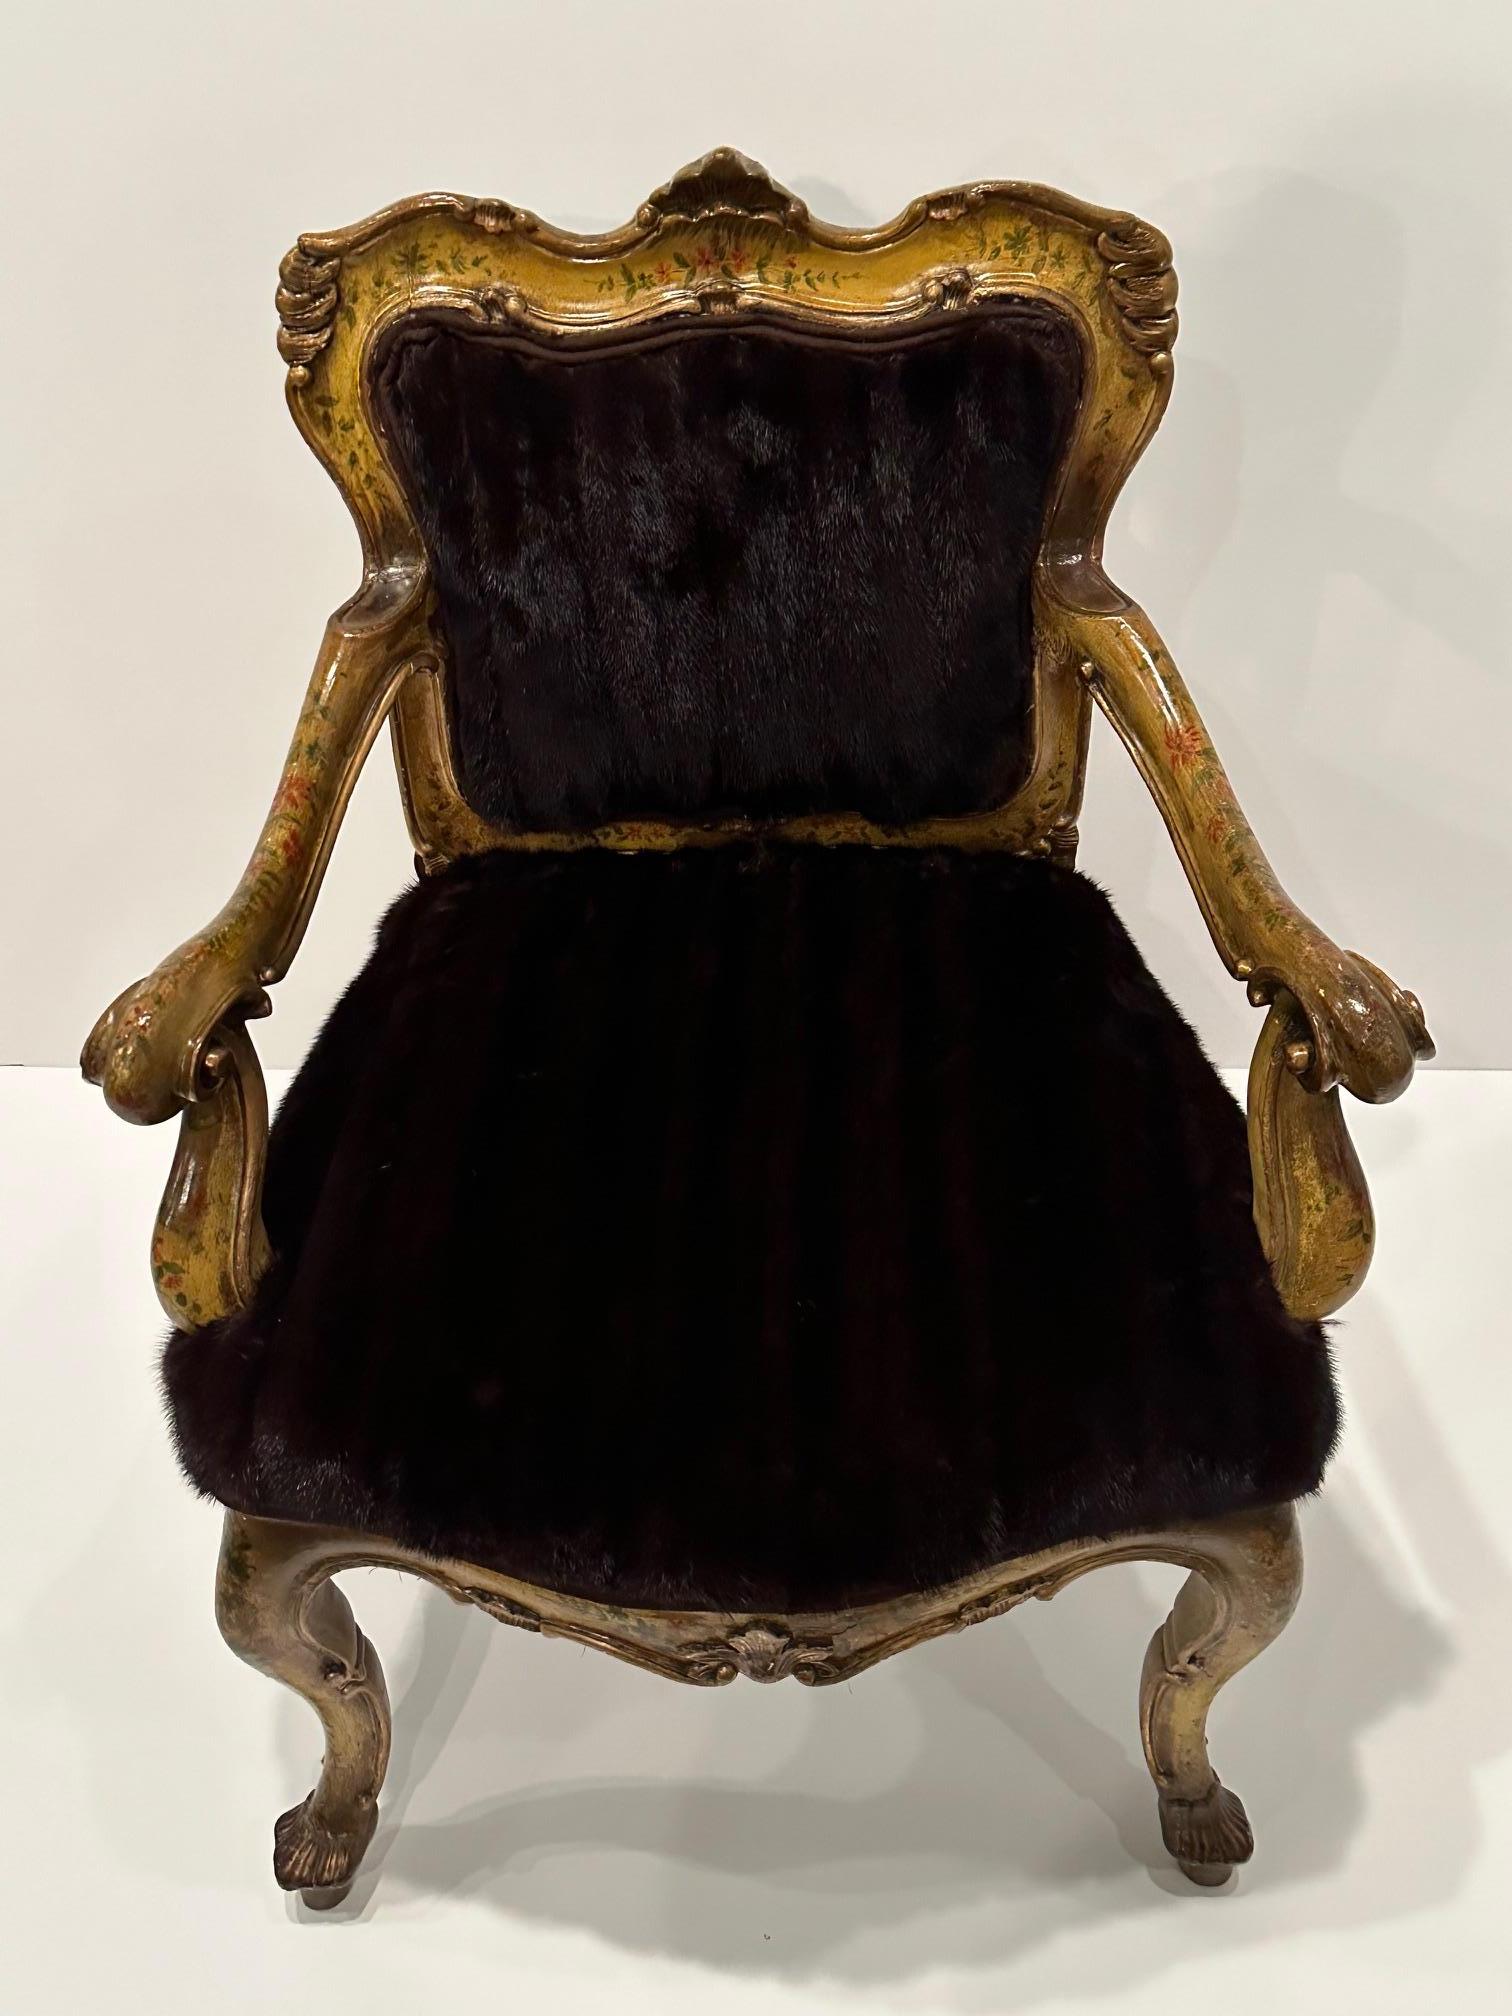 Fauteuil vénitien peint d'un luxe décadent, décoré d'ornements et nouvellement recouvert de fourrure de vison.
hauteur du bras 25